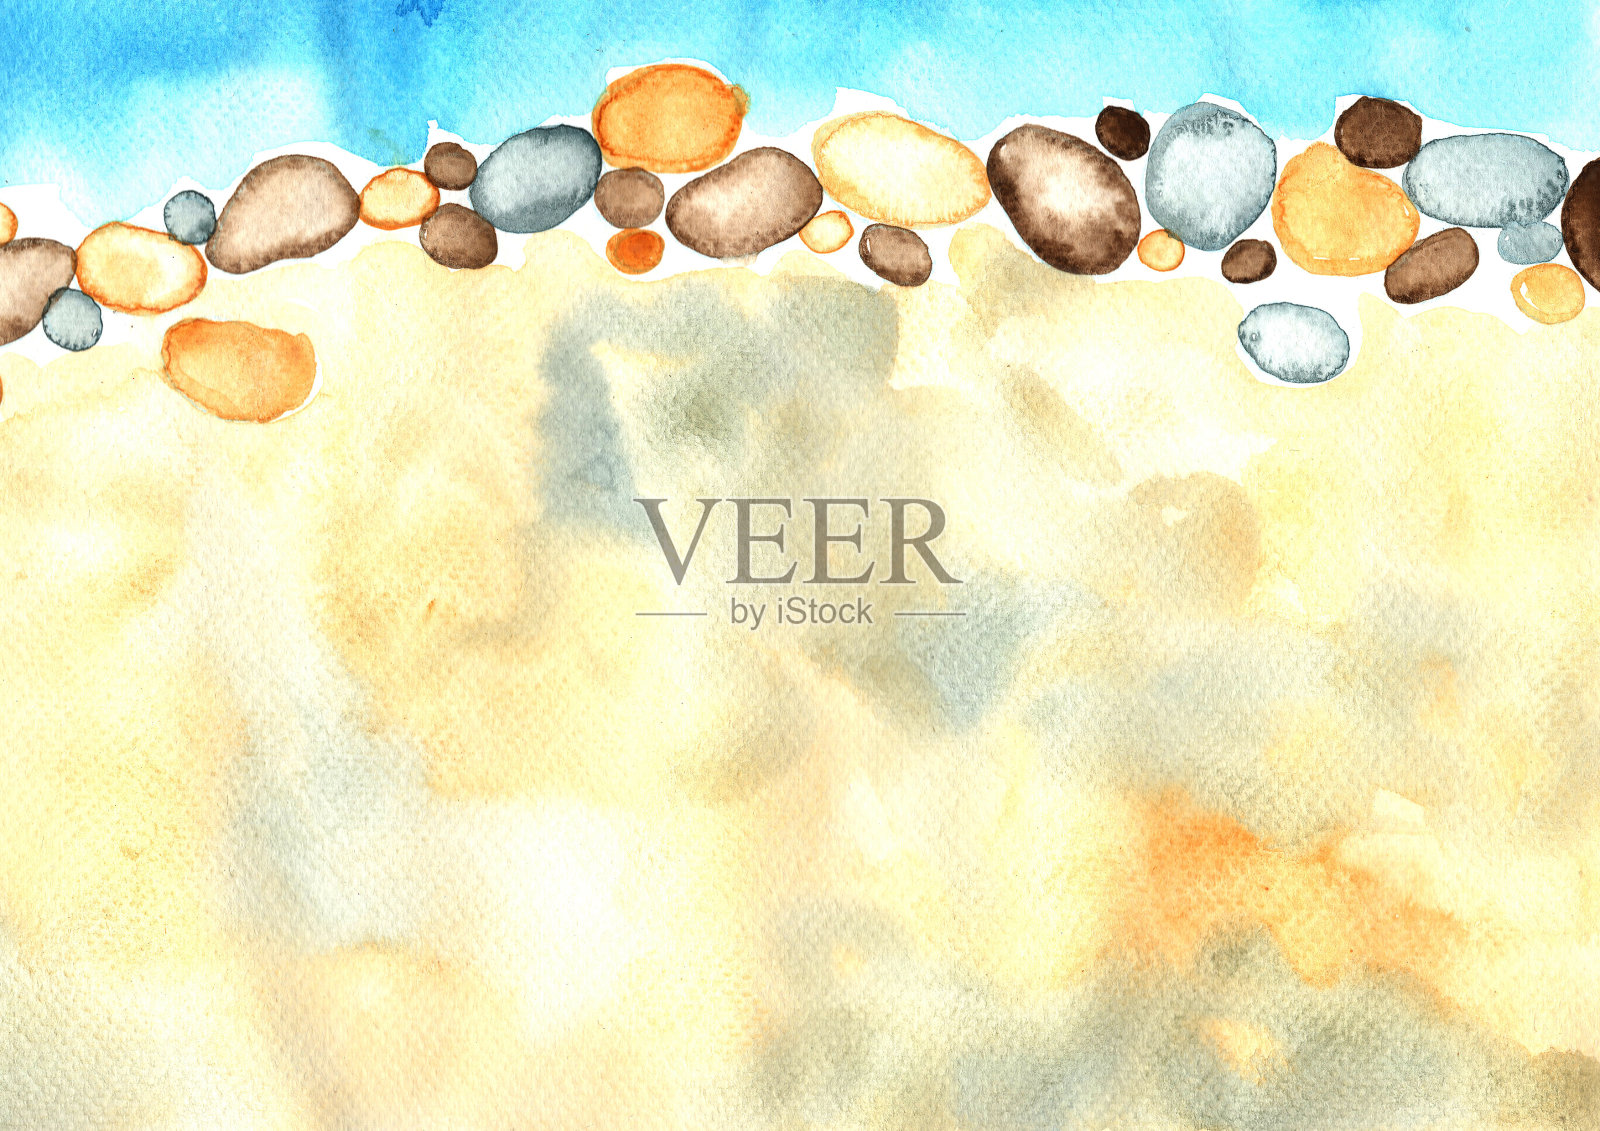 河岸以水、岩礁和沙为手绘水彩背景。插画图片素材